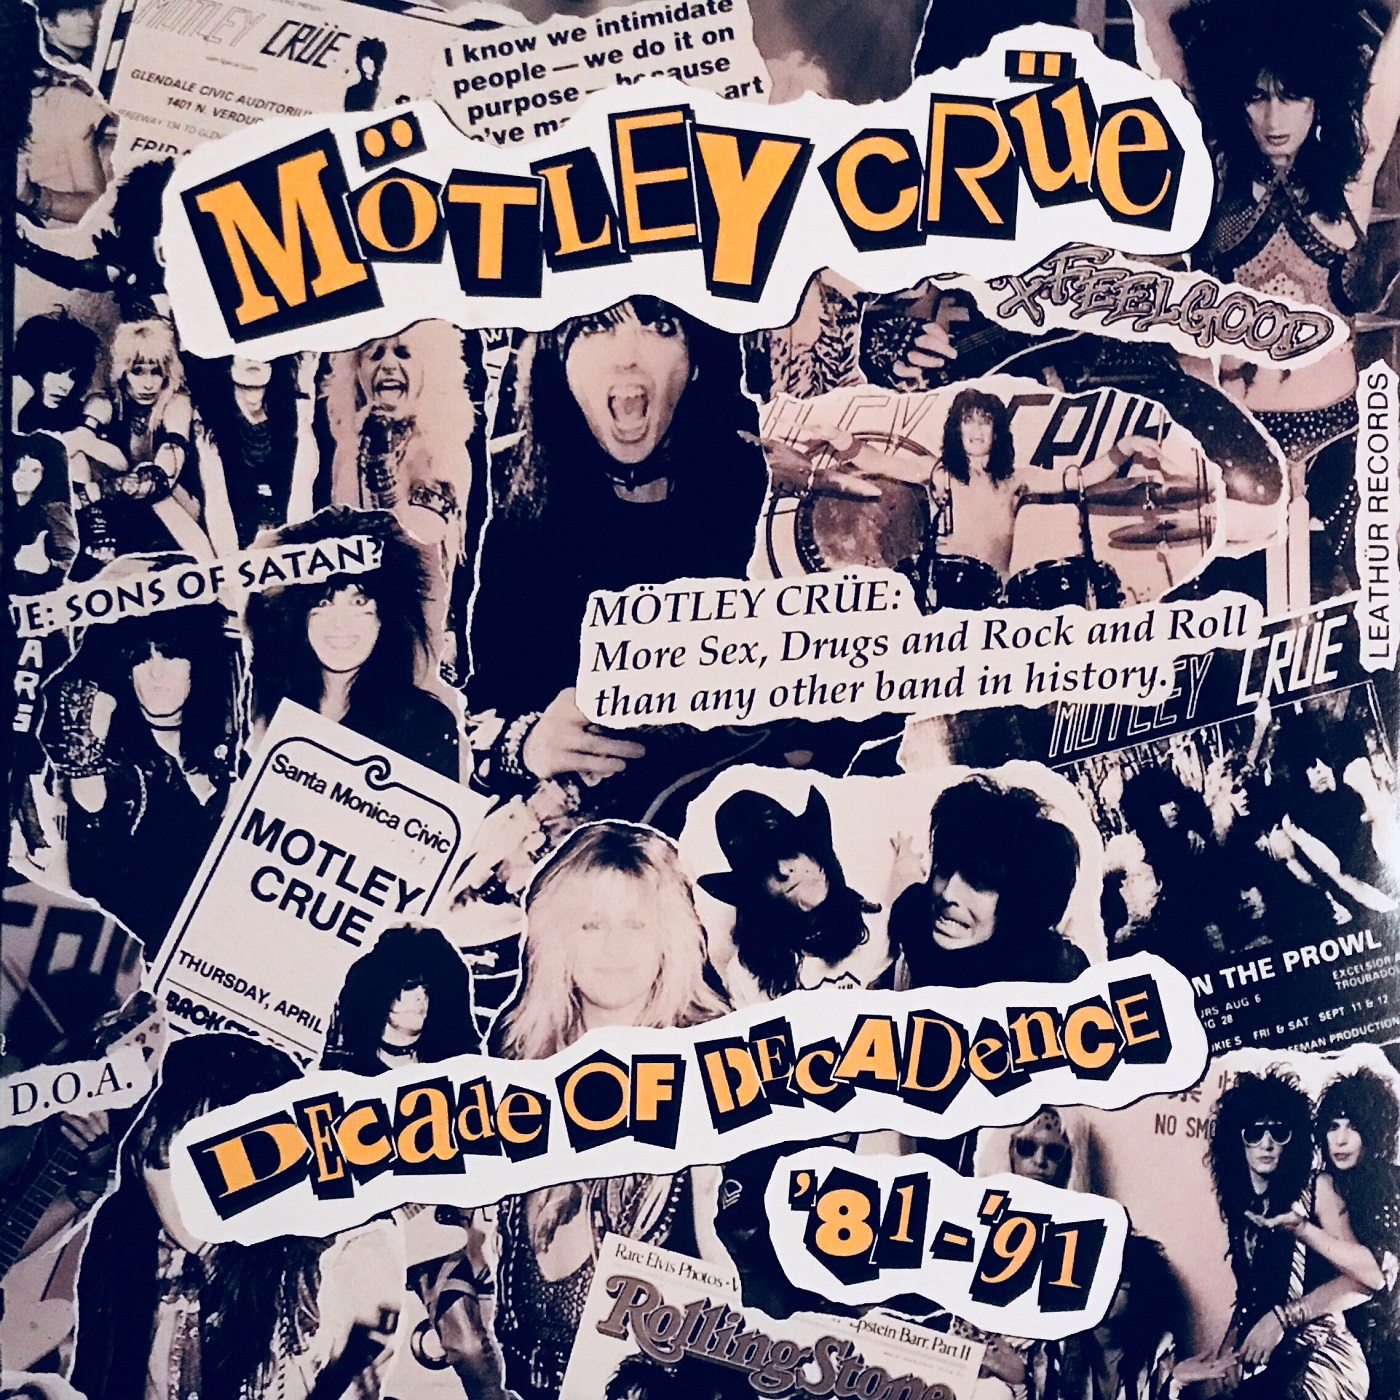 Cover - Mötley Crüe - Decade of Decadence '81-'91.jpg